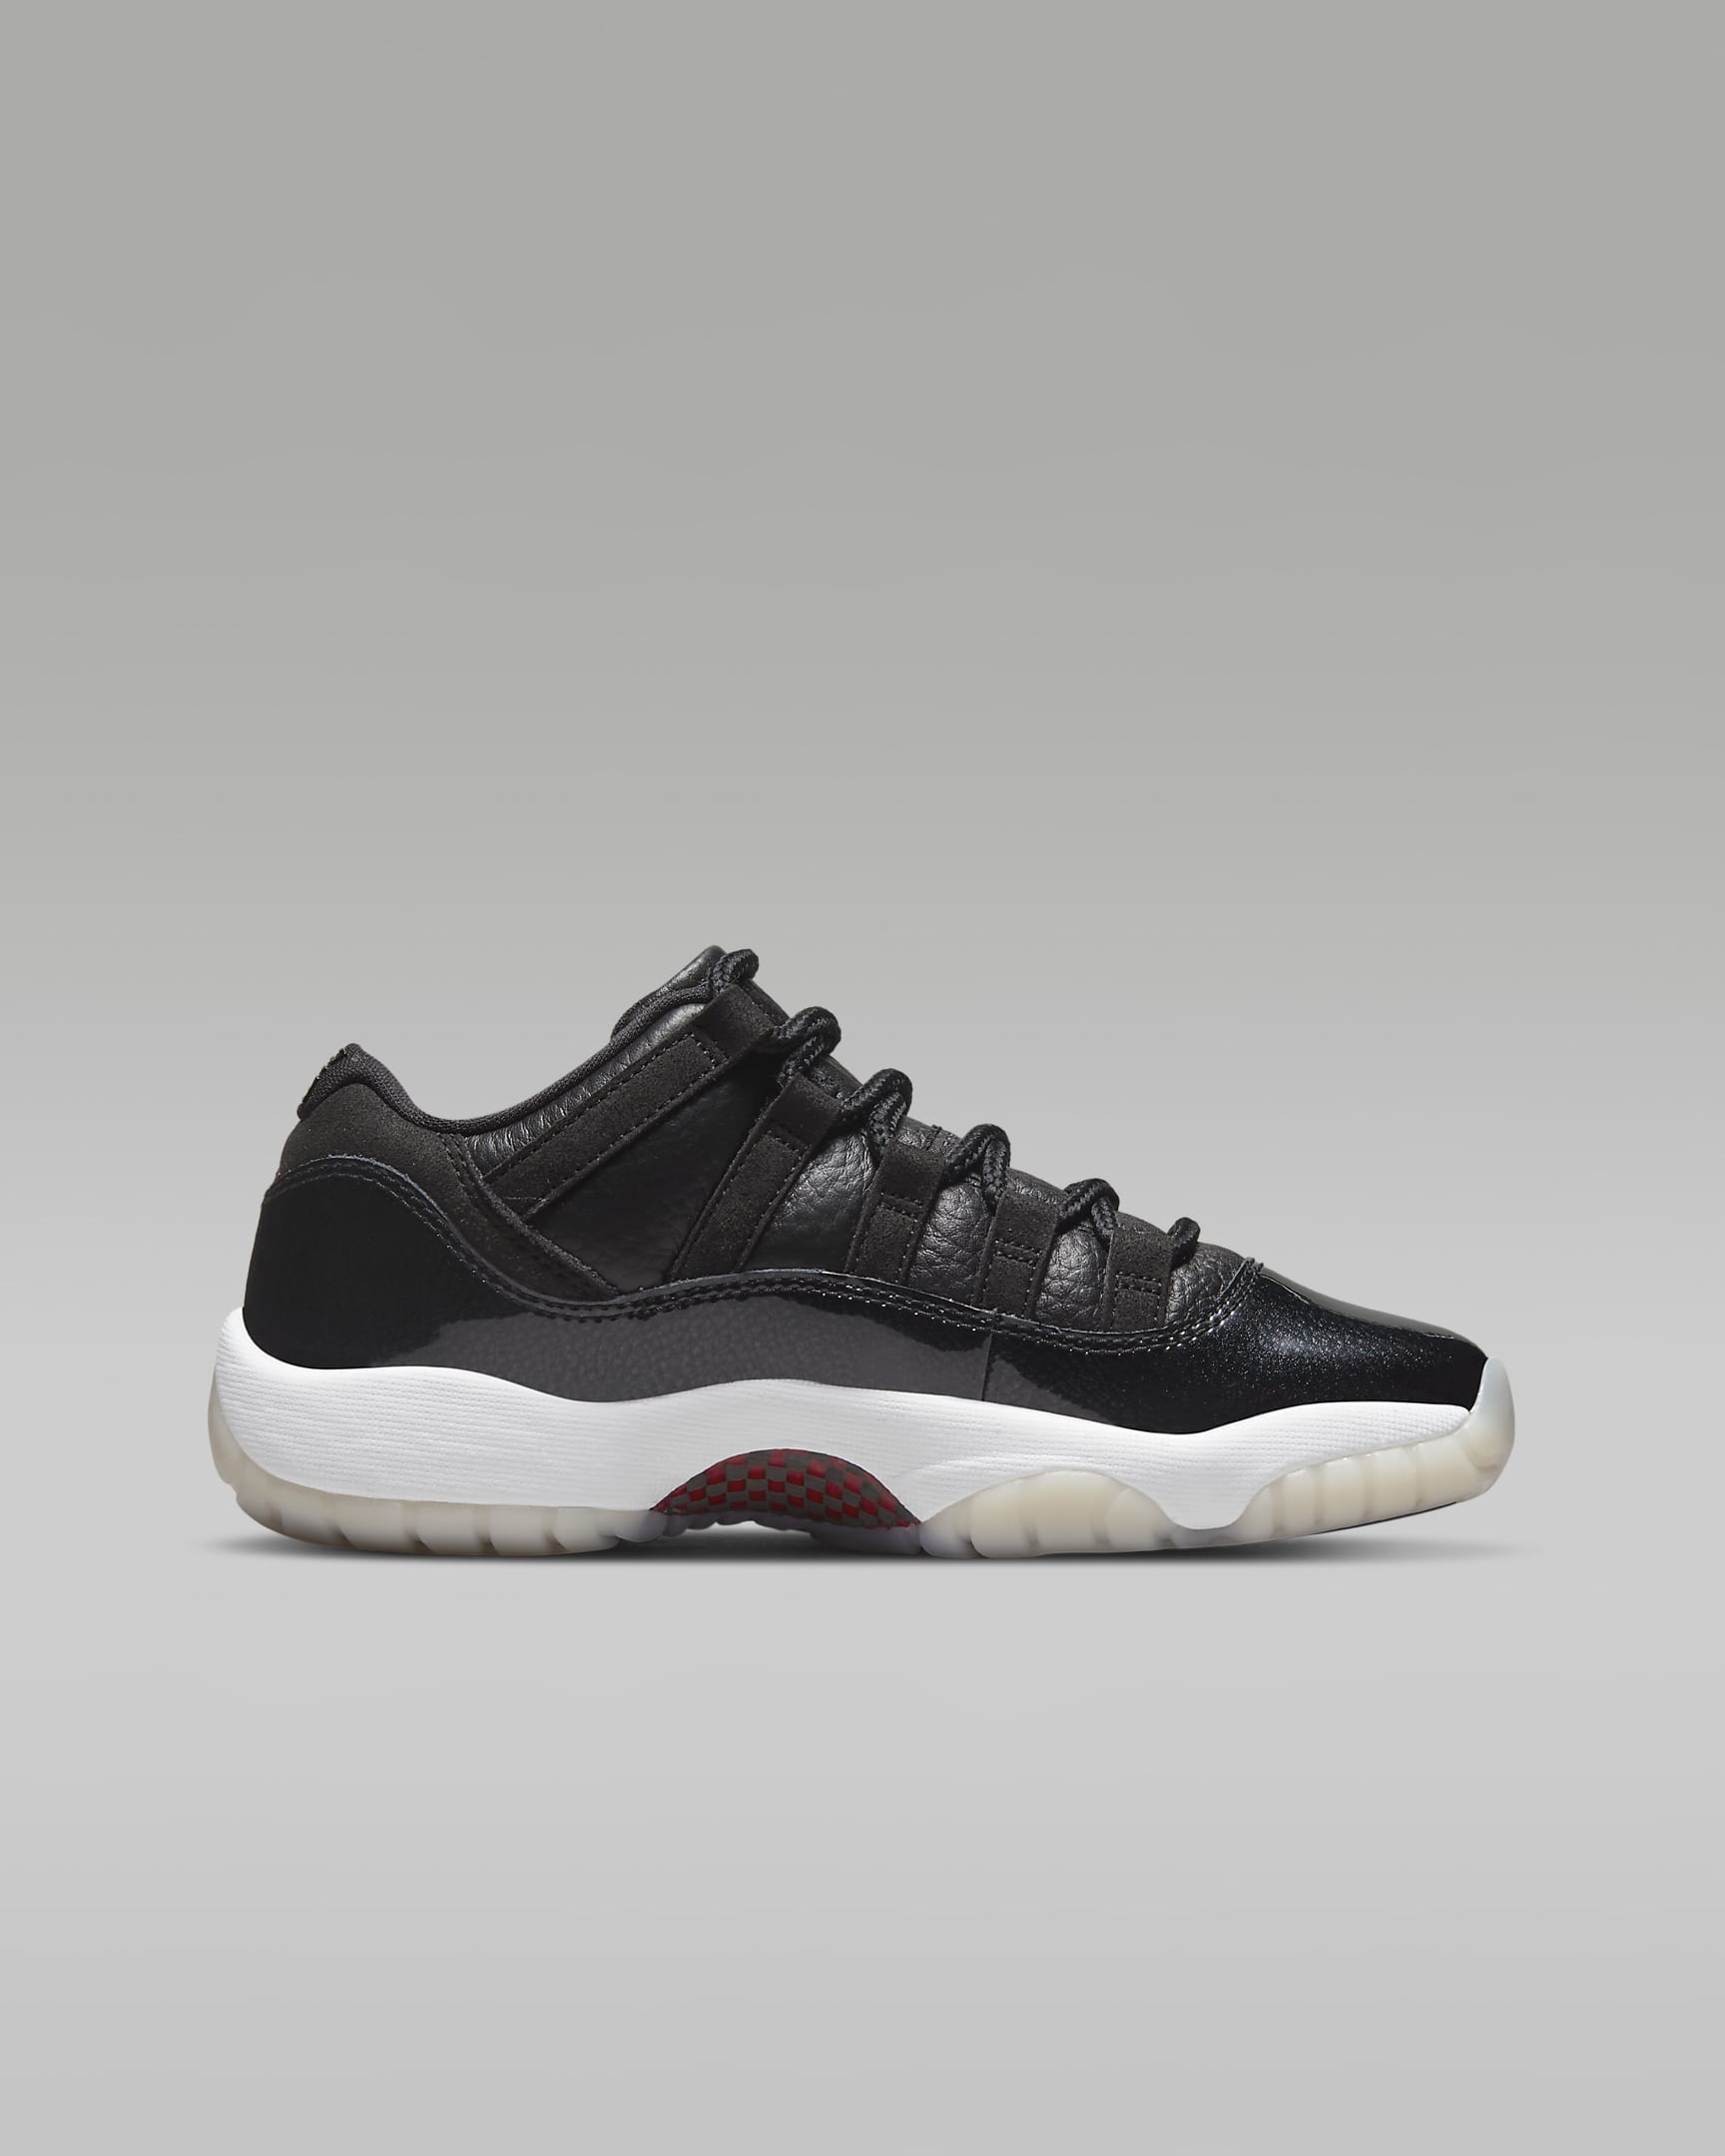 Air Jordan 11 Retro Low Older Kids' Shoes. Nike LU